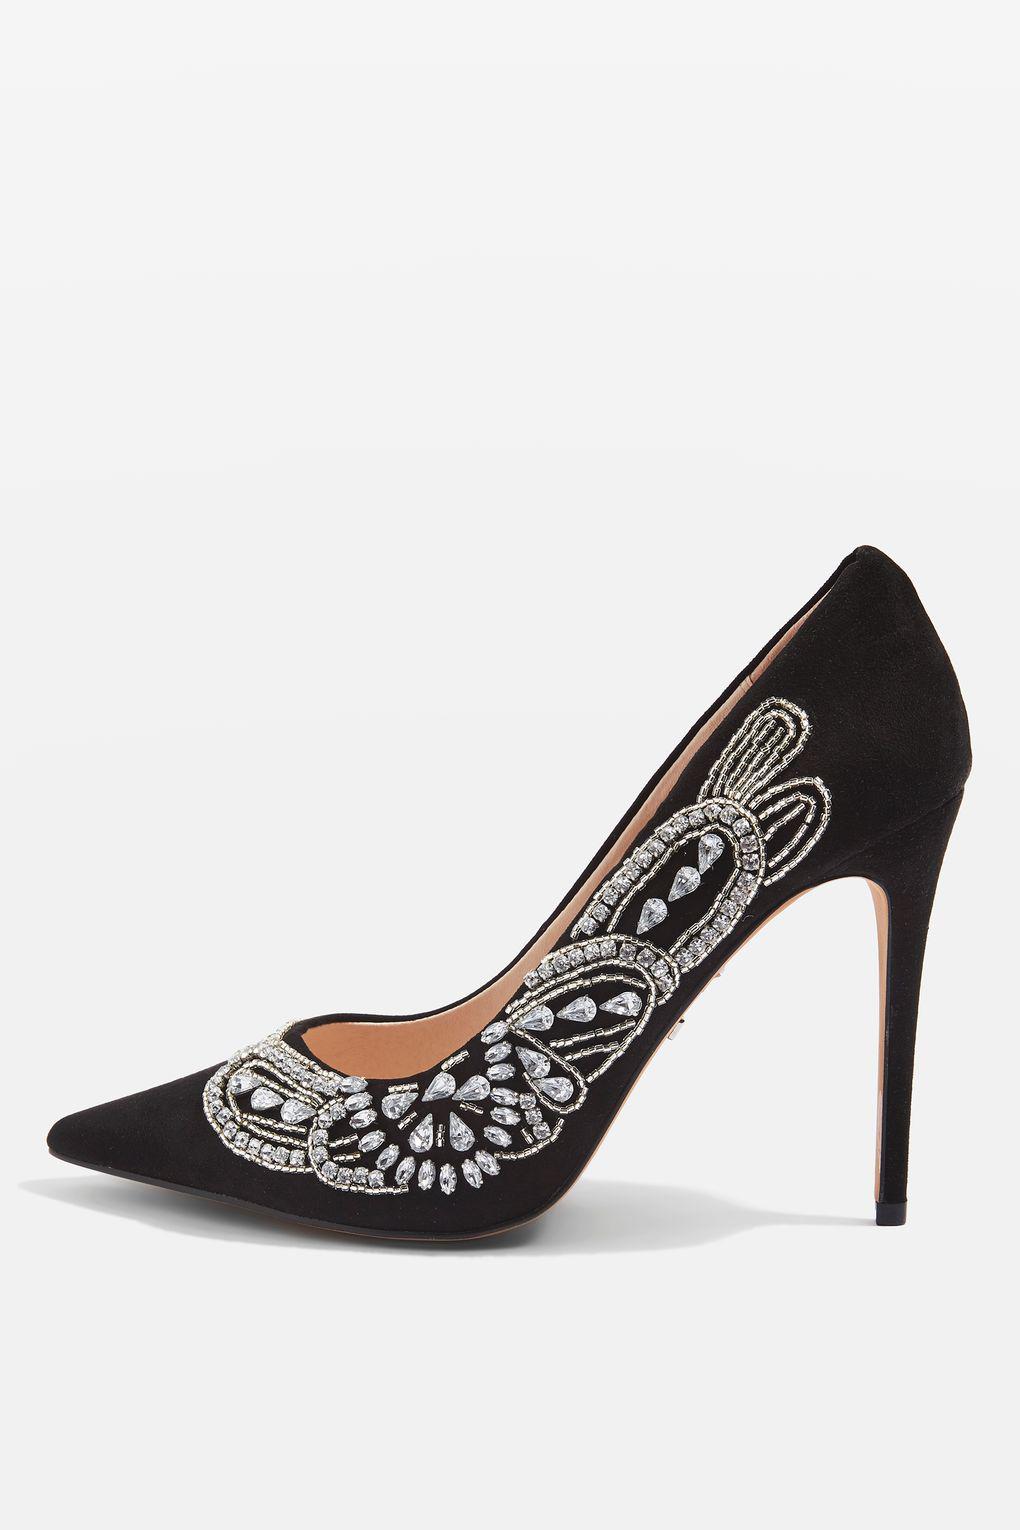 Black Embellished Court Shoes Ireland, SAVE 43% - raptorunderlayment.com